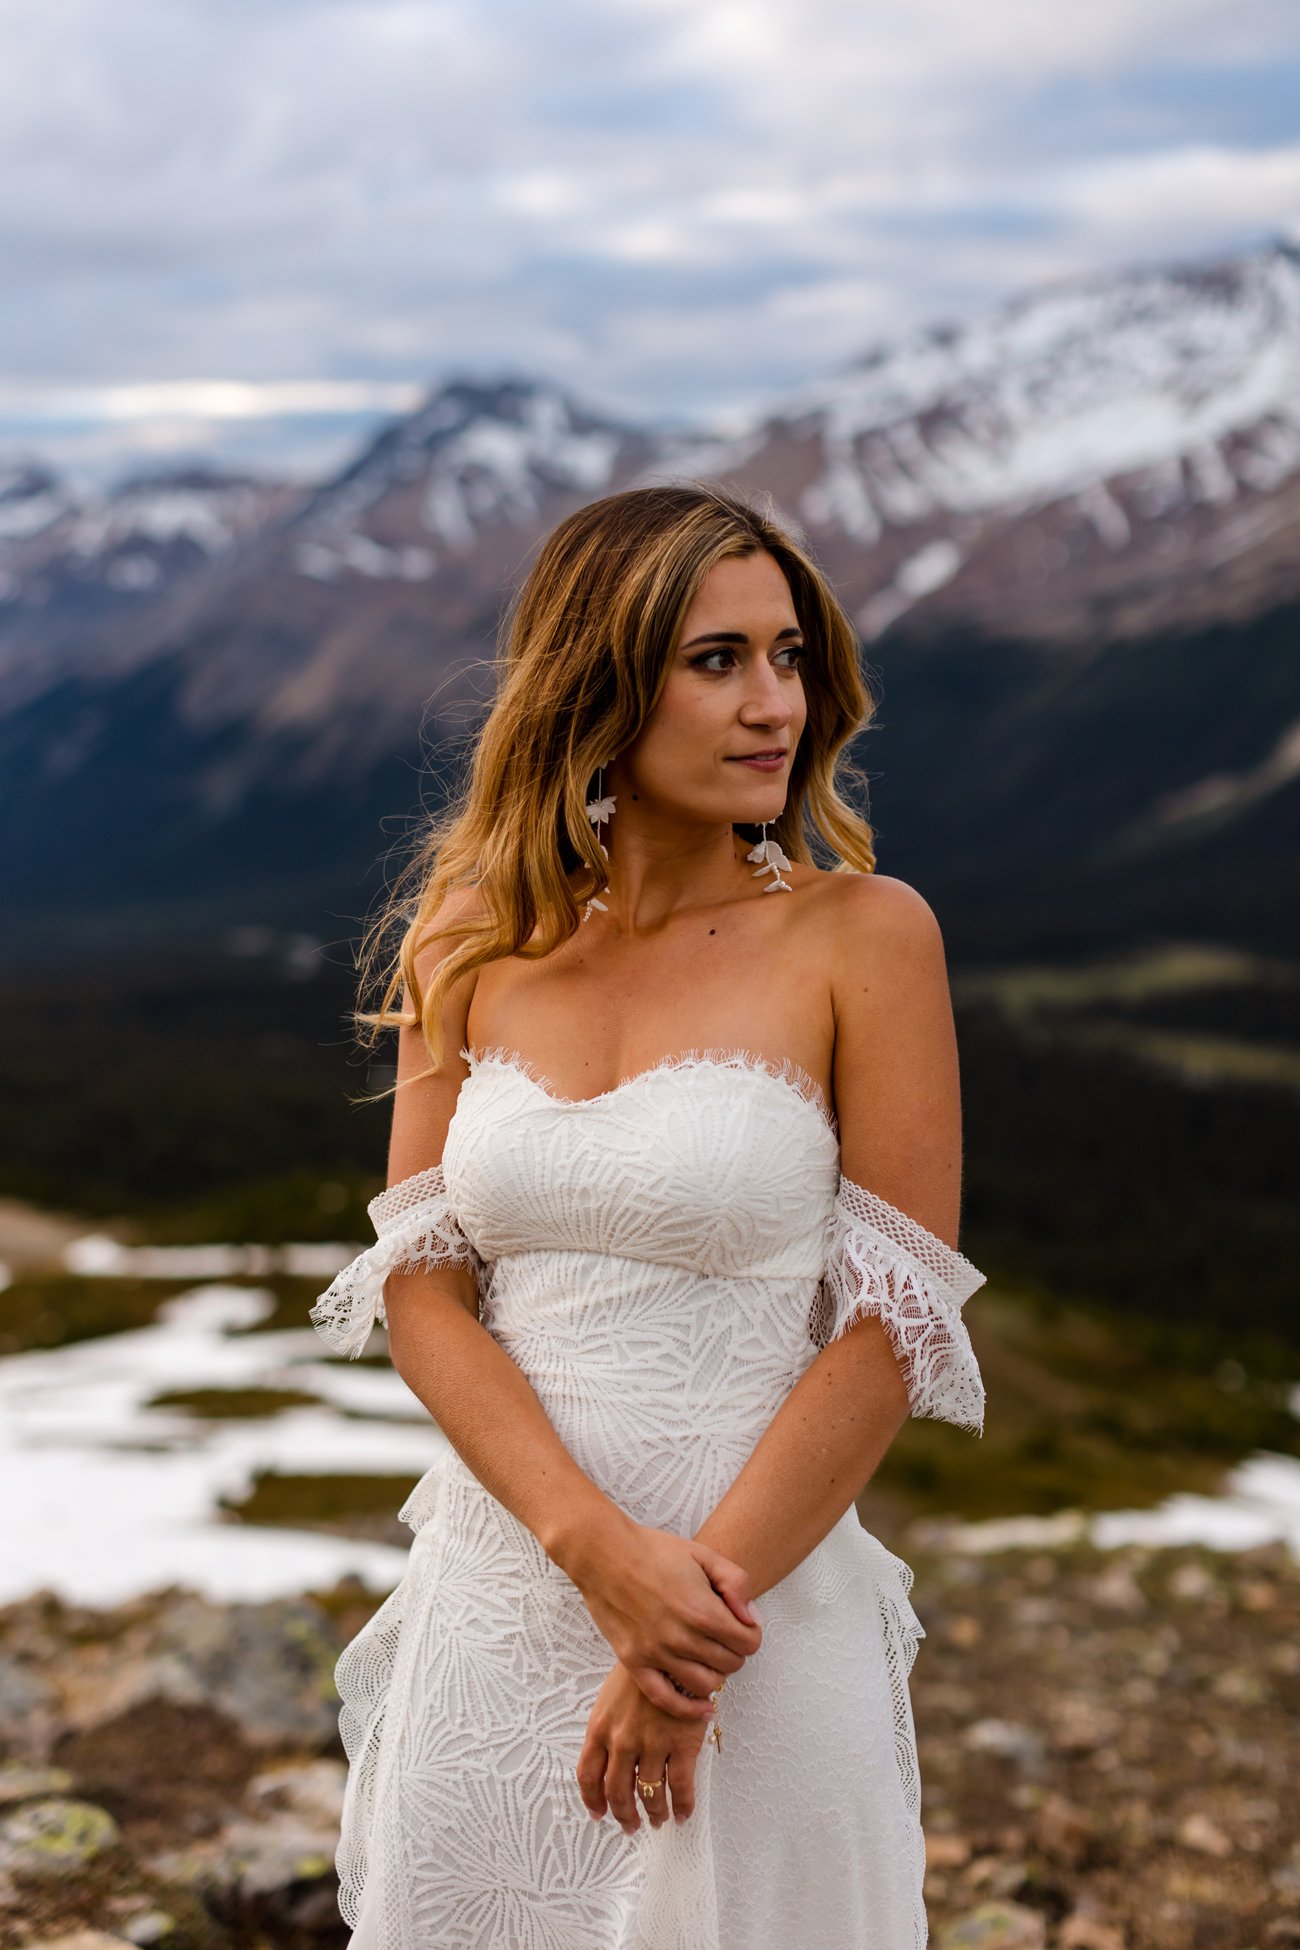  Peyto Lake Elopement, Canadian Rockies, Banff Wedding Photographer, Bow Lake Alberta 